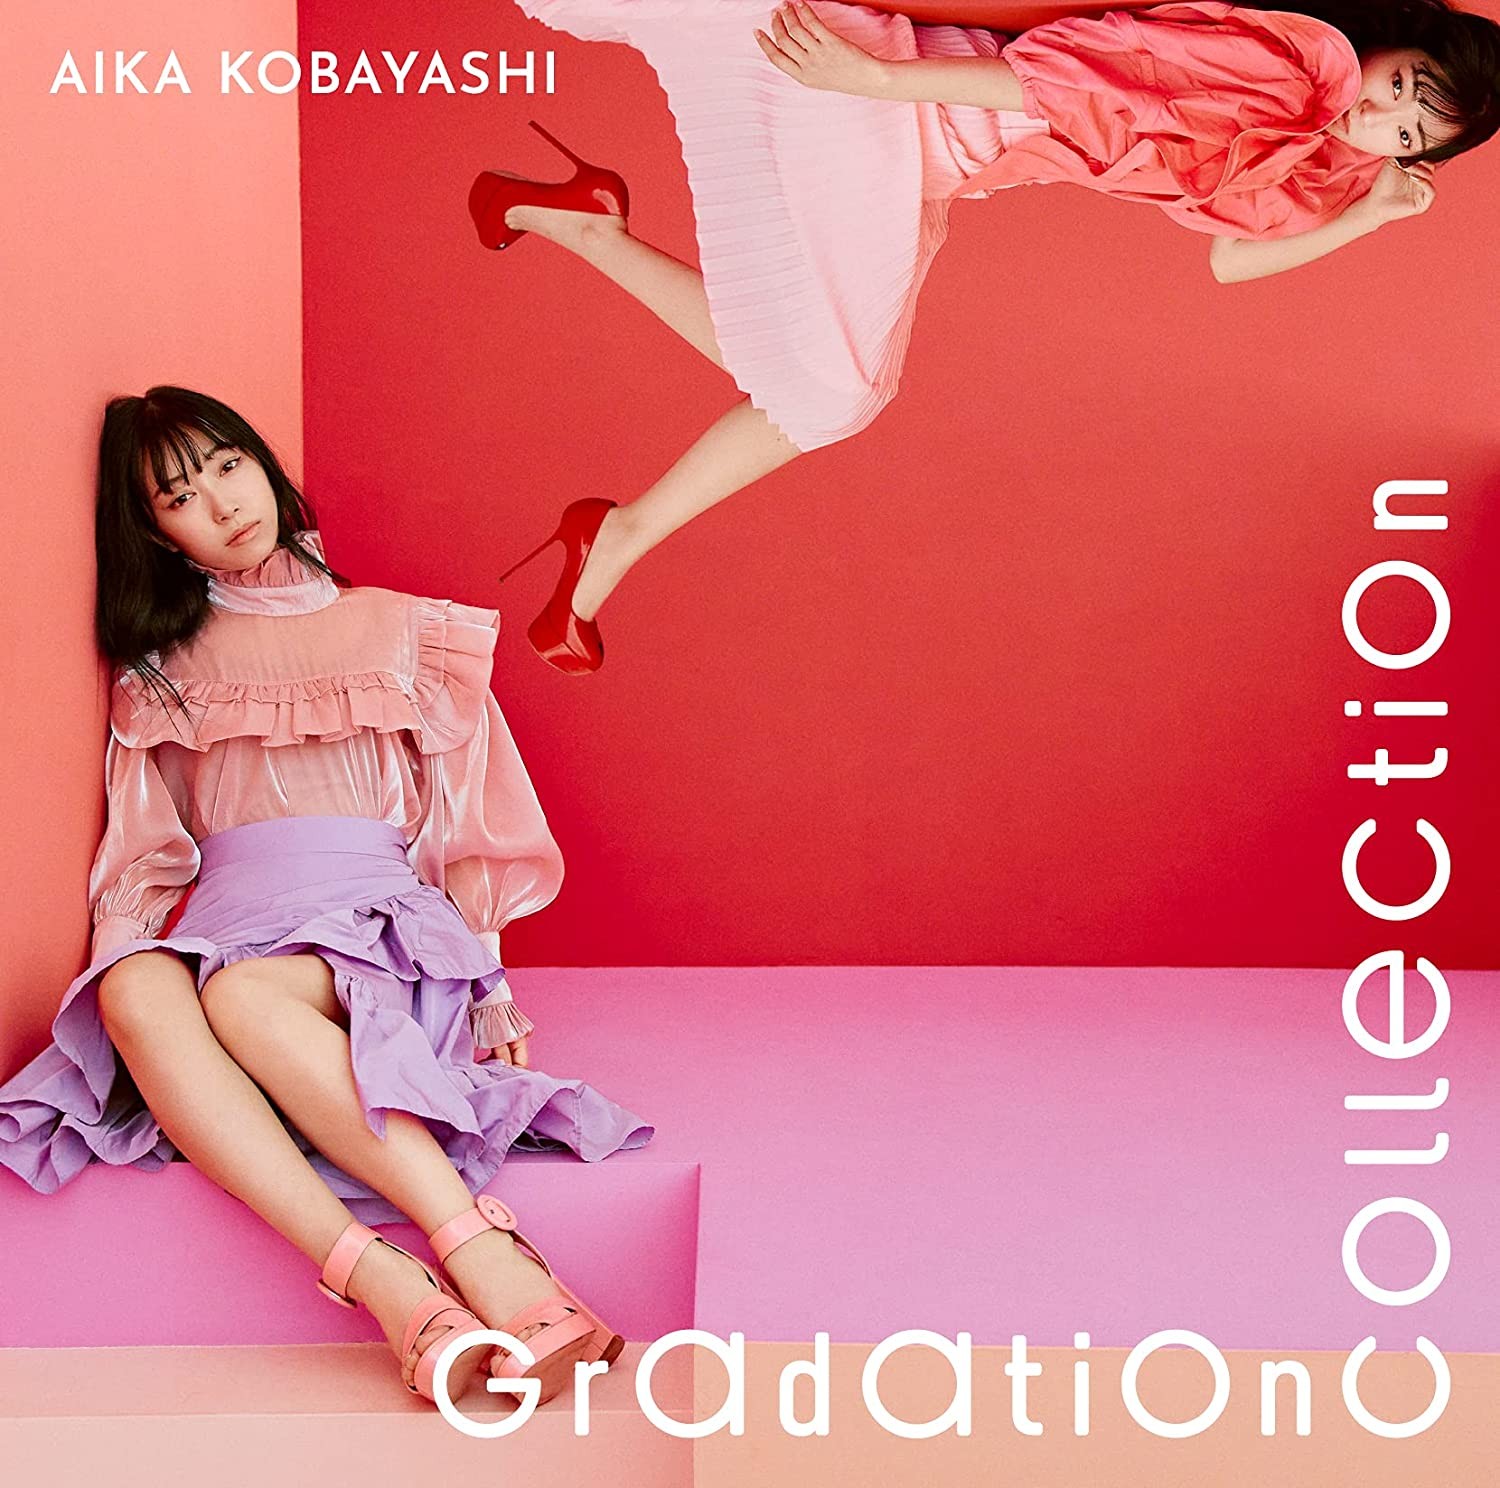 小林愛香 (Aika Kobayashi) – Gradation Collection [FLAC / CD] [2021.06.23]